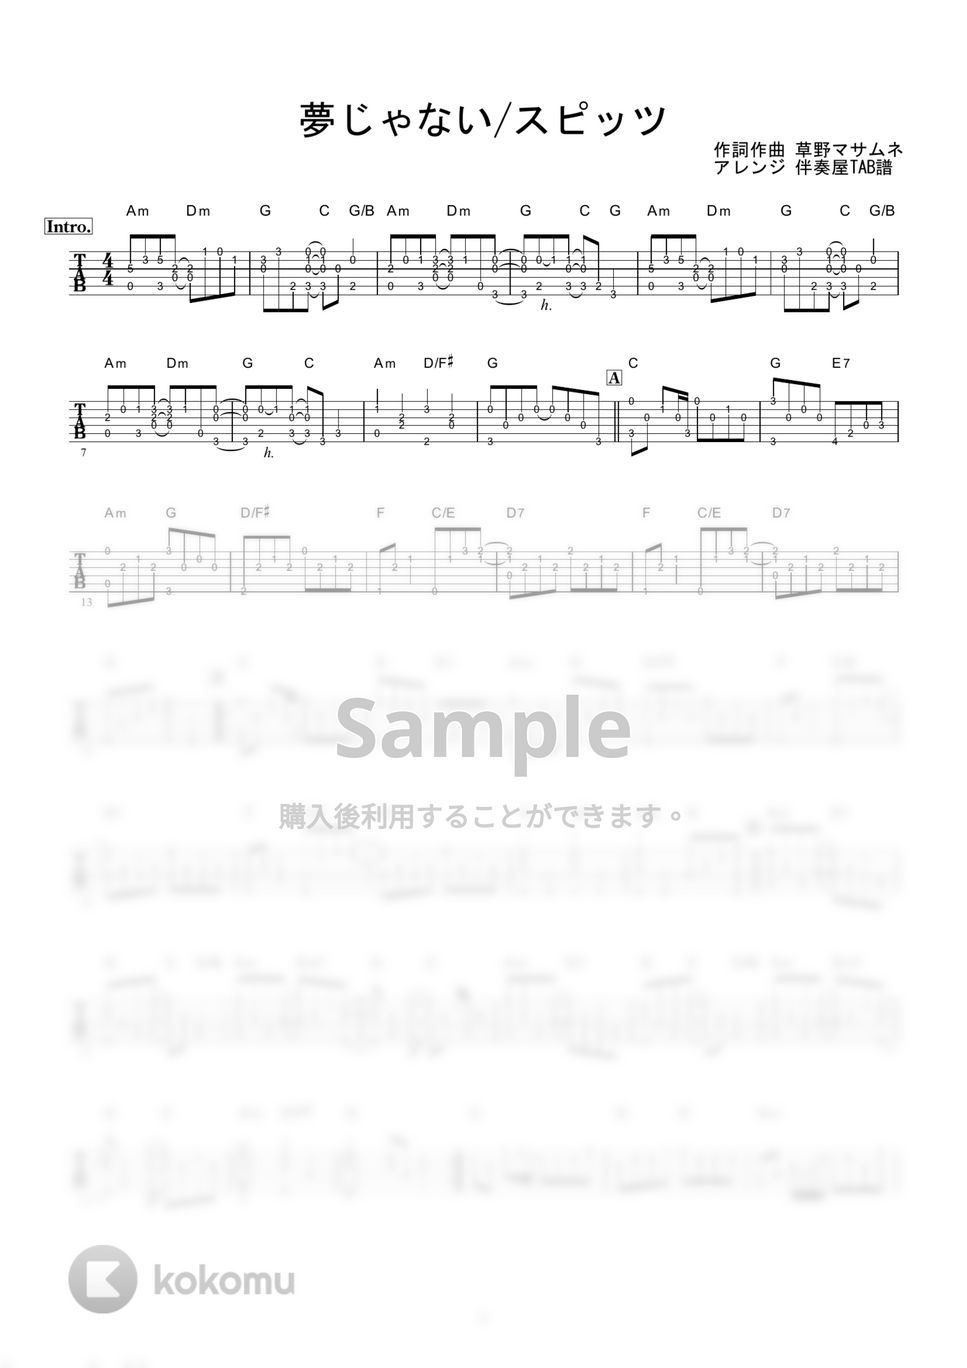 スピッツ - 夢じゃない (ギター伴奏/イントロ・間奏ソロギター) by 伴奏屋TAB譜